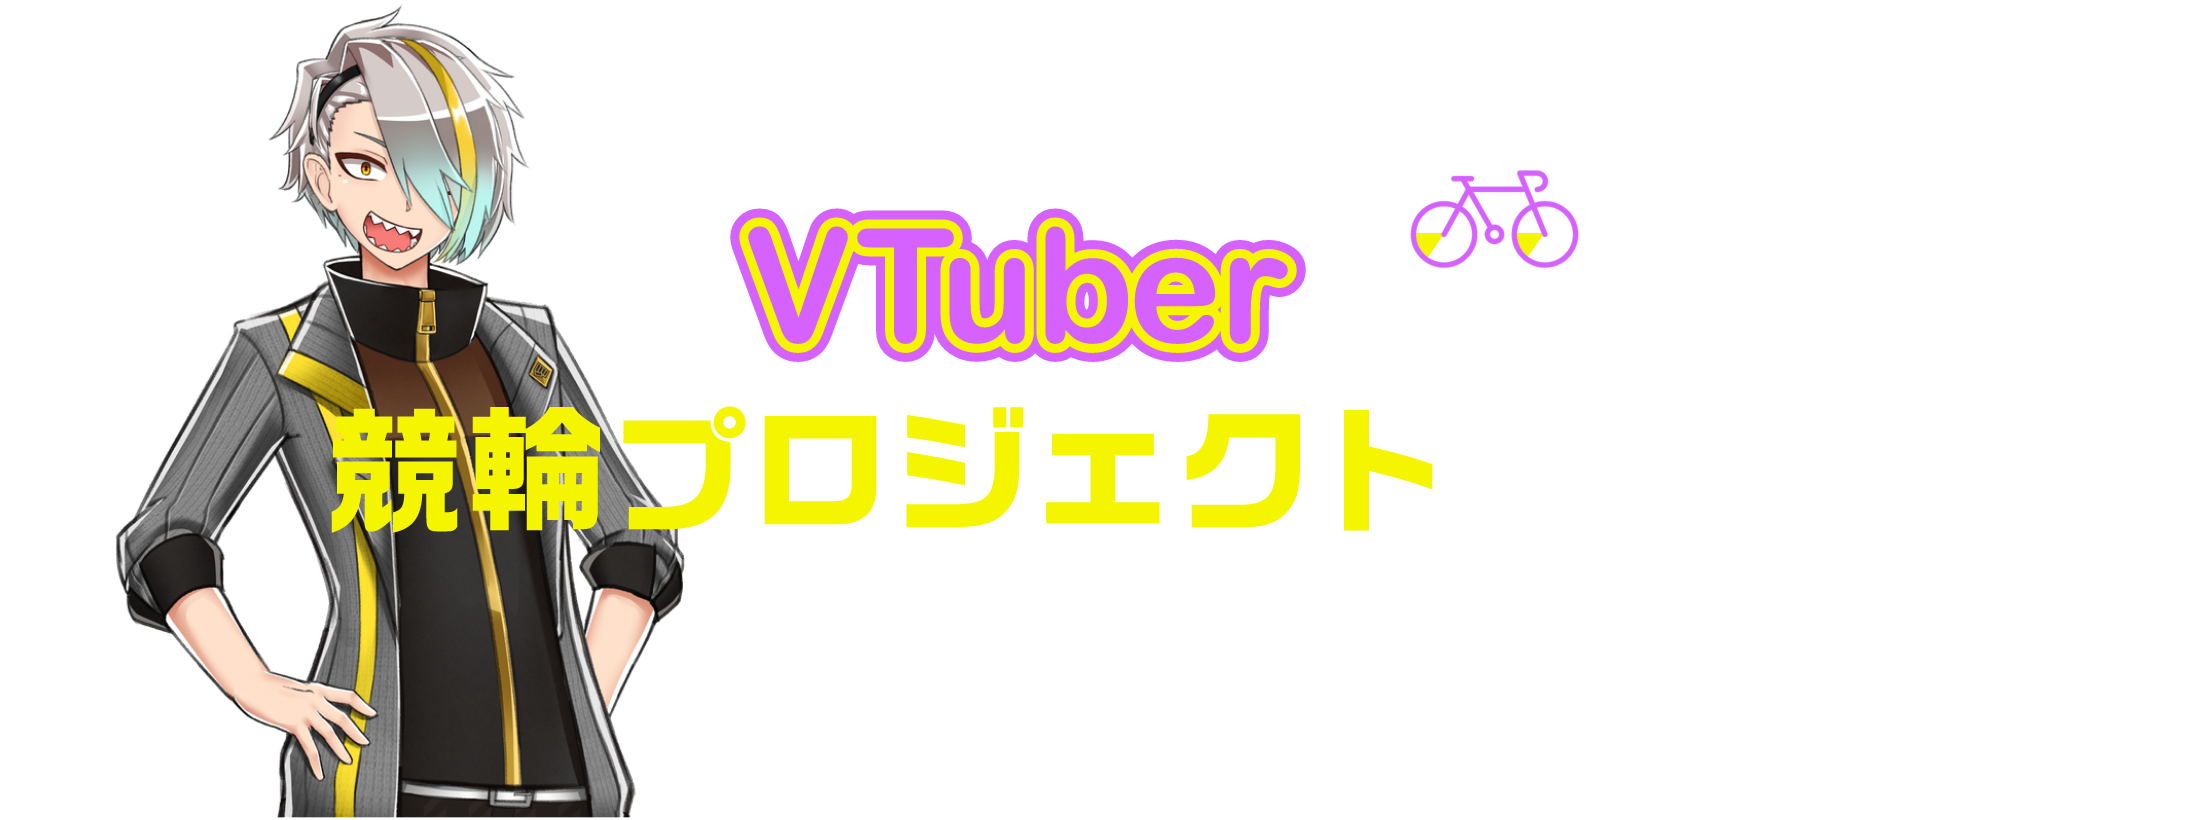 VTuber競輪プロジェクトとは